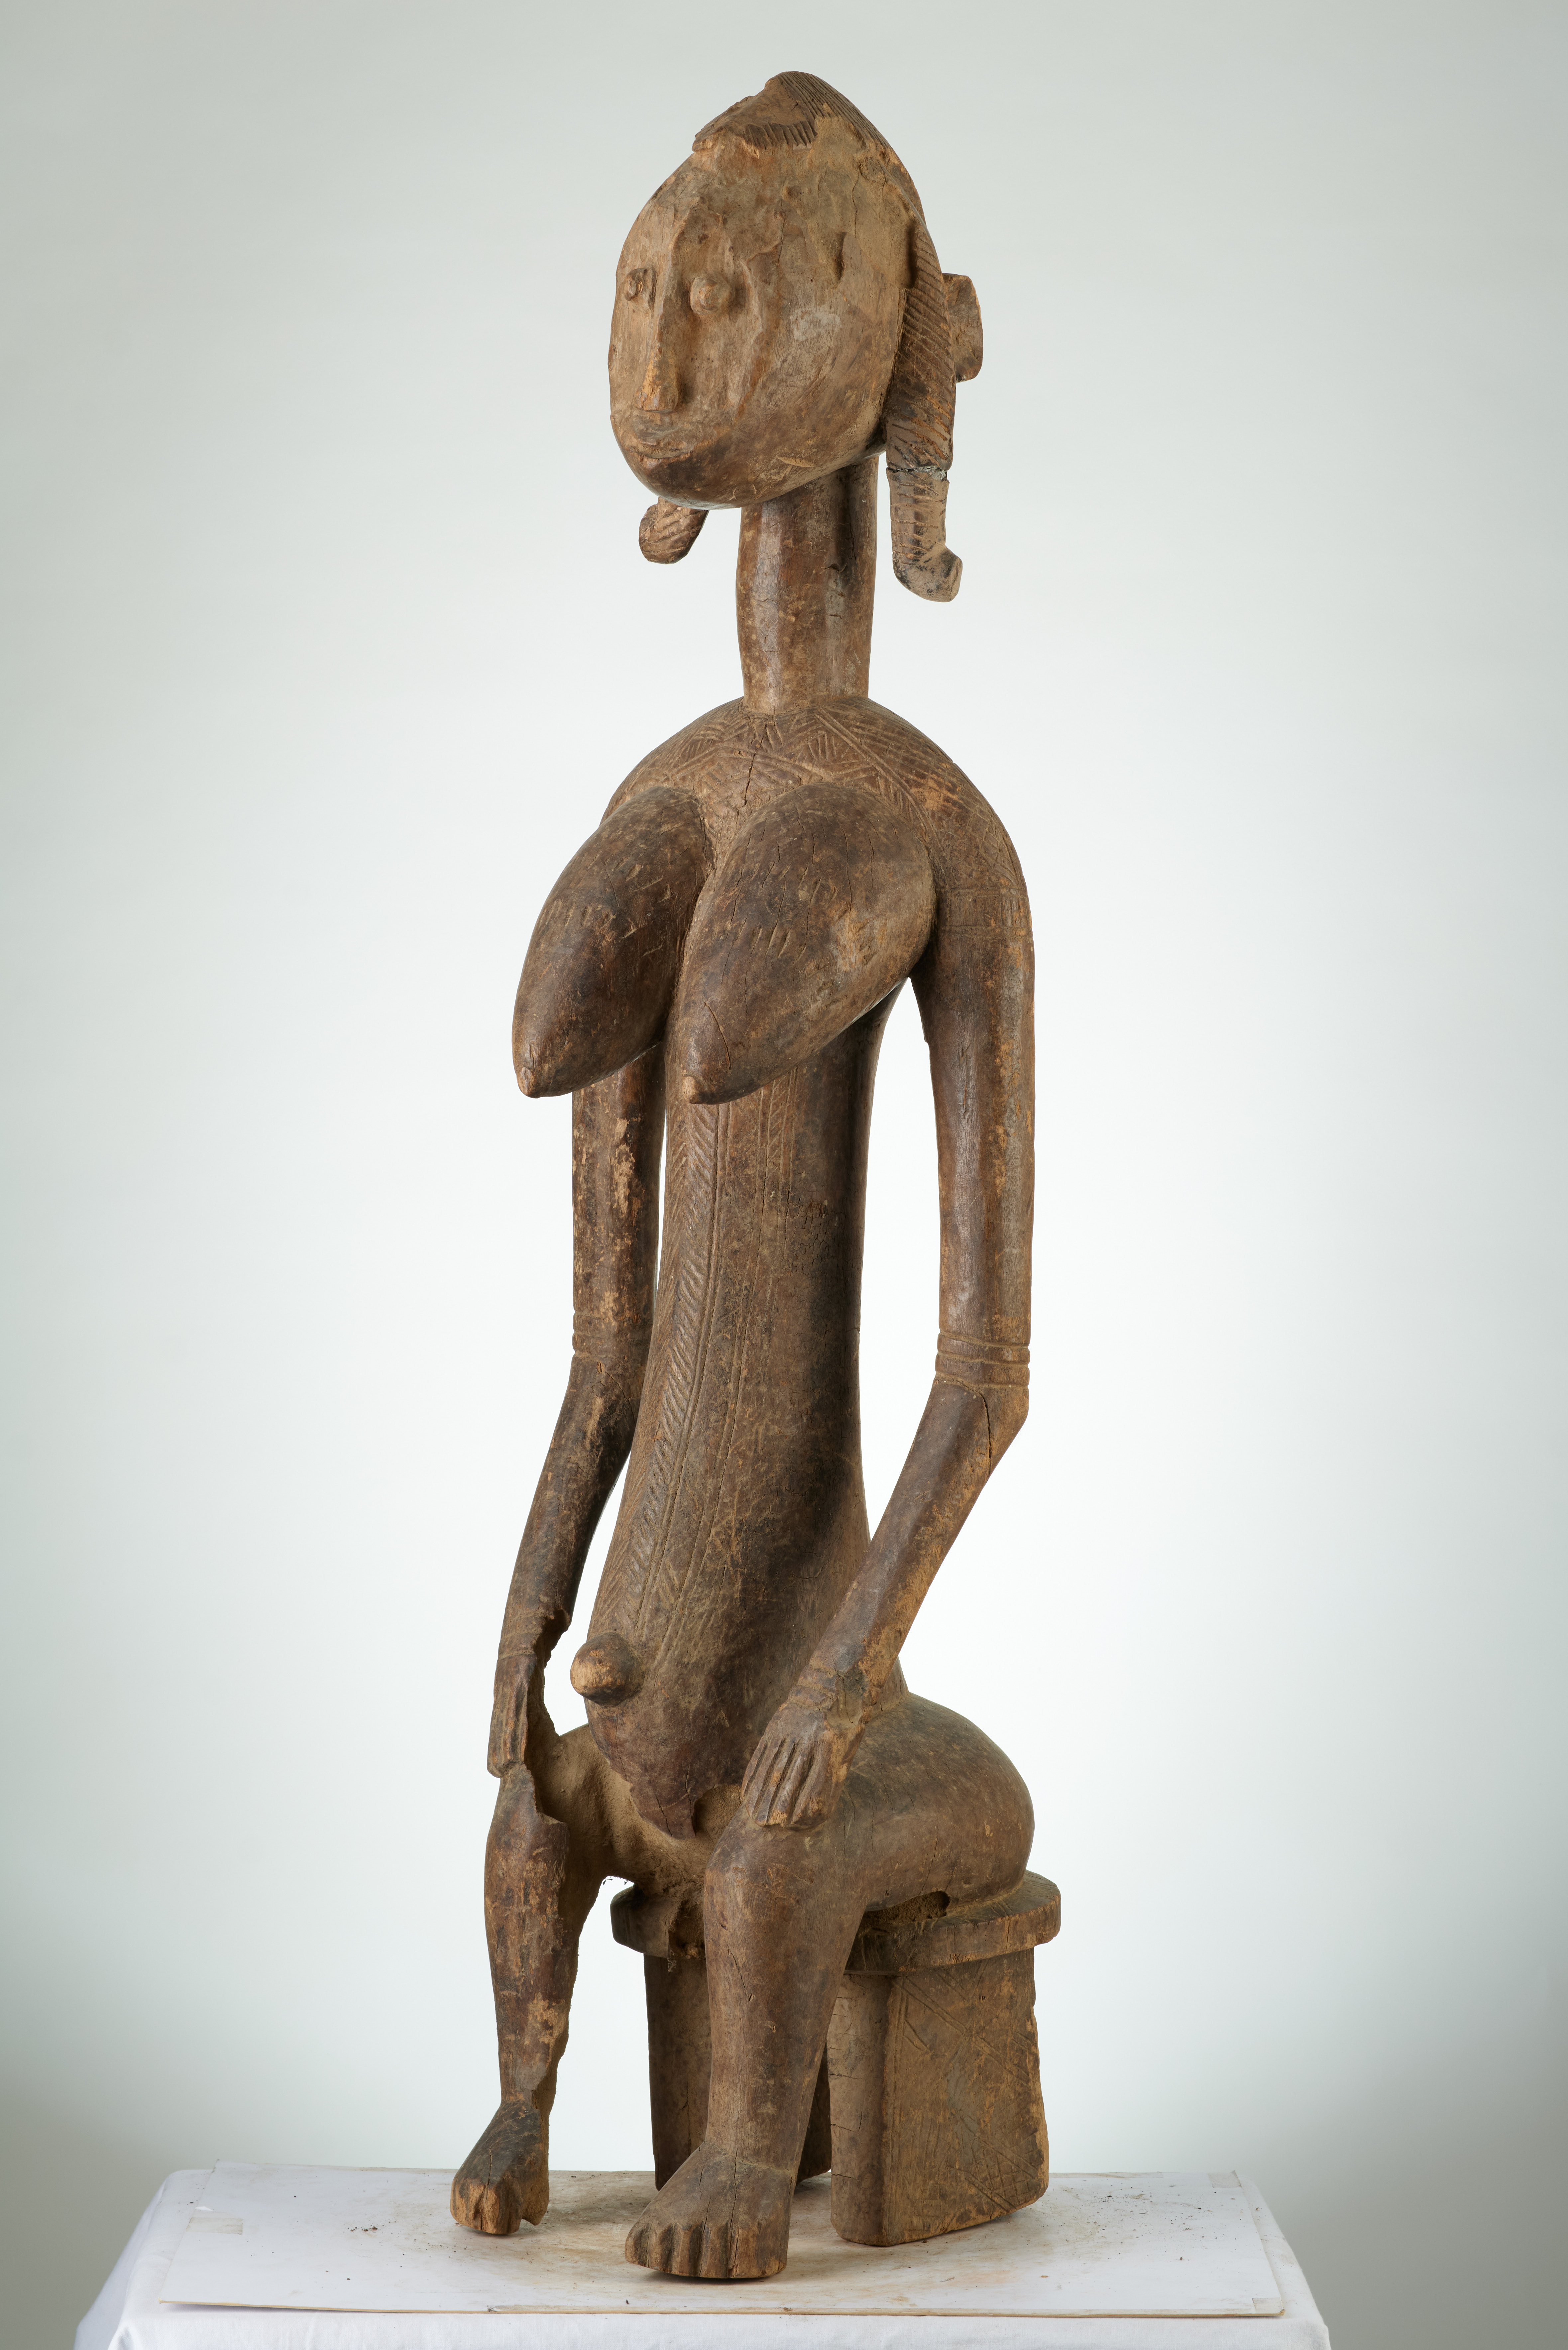 bambara (statue assise), d`afrique : MALI, statuette bambara (statue assise), masque ancien africain bambara (statue assise), art du MALI - Art Africain, collection privées Belgique. Statue africaine de la tribu des bambara (statue assise), provenant du MALI, 1878:Ancêtre Bambara assise les deux mains posés sur les genoux.appelée GUANDOUDOU de la societé GUAN.Une coiffure en forme decrëte.bois érodé début 20eme sc (col Sylla Ousmane Malien )


Bambara voorouder neerzittend met de twee handen op haar knieên ,GUANDOUDOU genaamd behorende tot de GUAN societeit.Ze heeft zware borsten,De haartooi is in kamvorm.Geerodeerd hout .Begin 20ste eeuw.. art,culture,masque,statue,statuette,pot,ivoire,exposition,expo,masque original,masques,statues,statuettes,pots,expositions,expo,masques originaux,collectionneur d`art,art africain,culture africaine,masque africain,statue africaine,statuette africaine,pot africain,ivoire africain,exposition africain,expo africain,masque origina africainl,masques africains,statues africaines,statuettes africaines,pots africains,expositions africaines,expo africaines,masques originaux  africains,collectionneur d`art africain